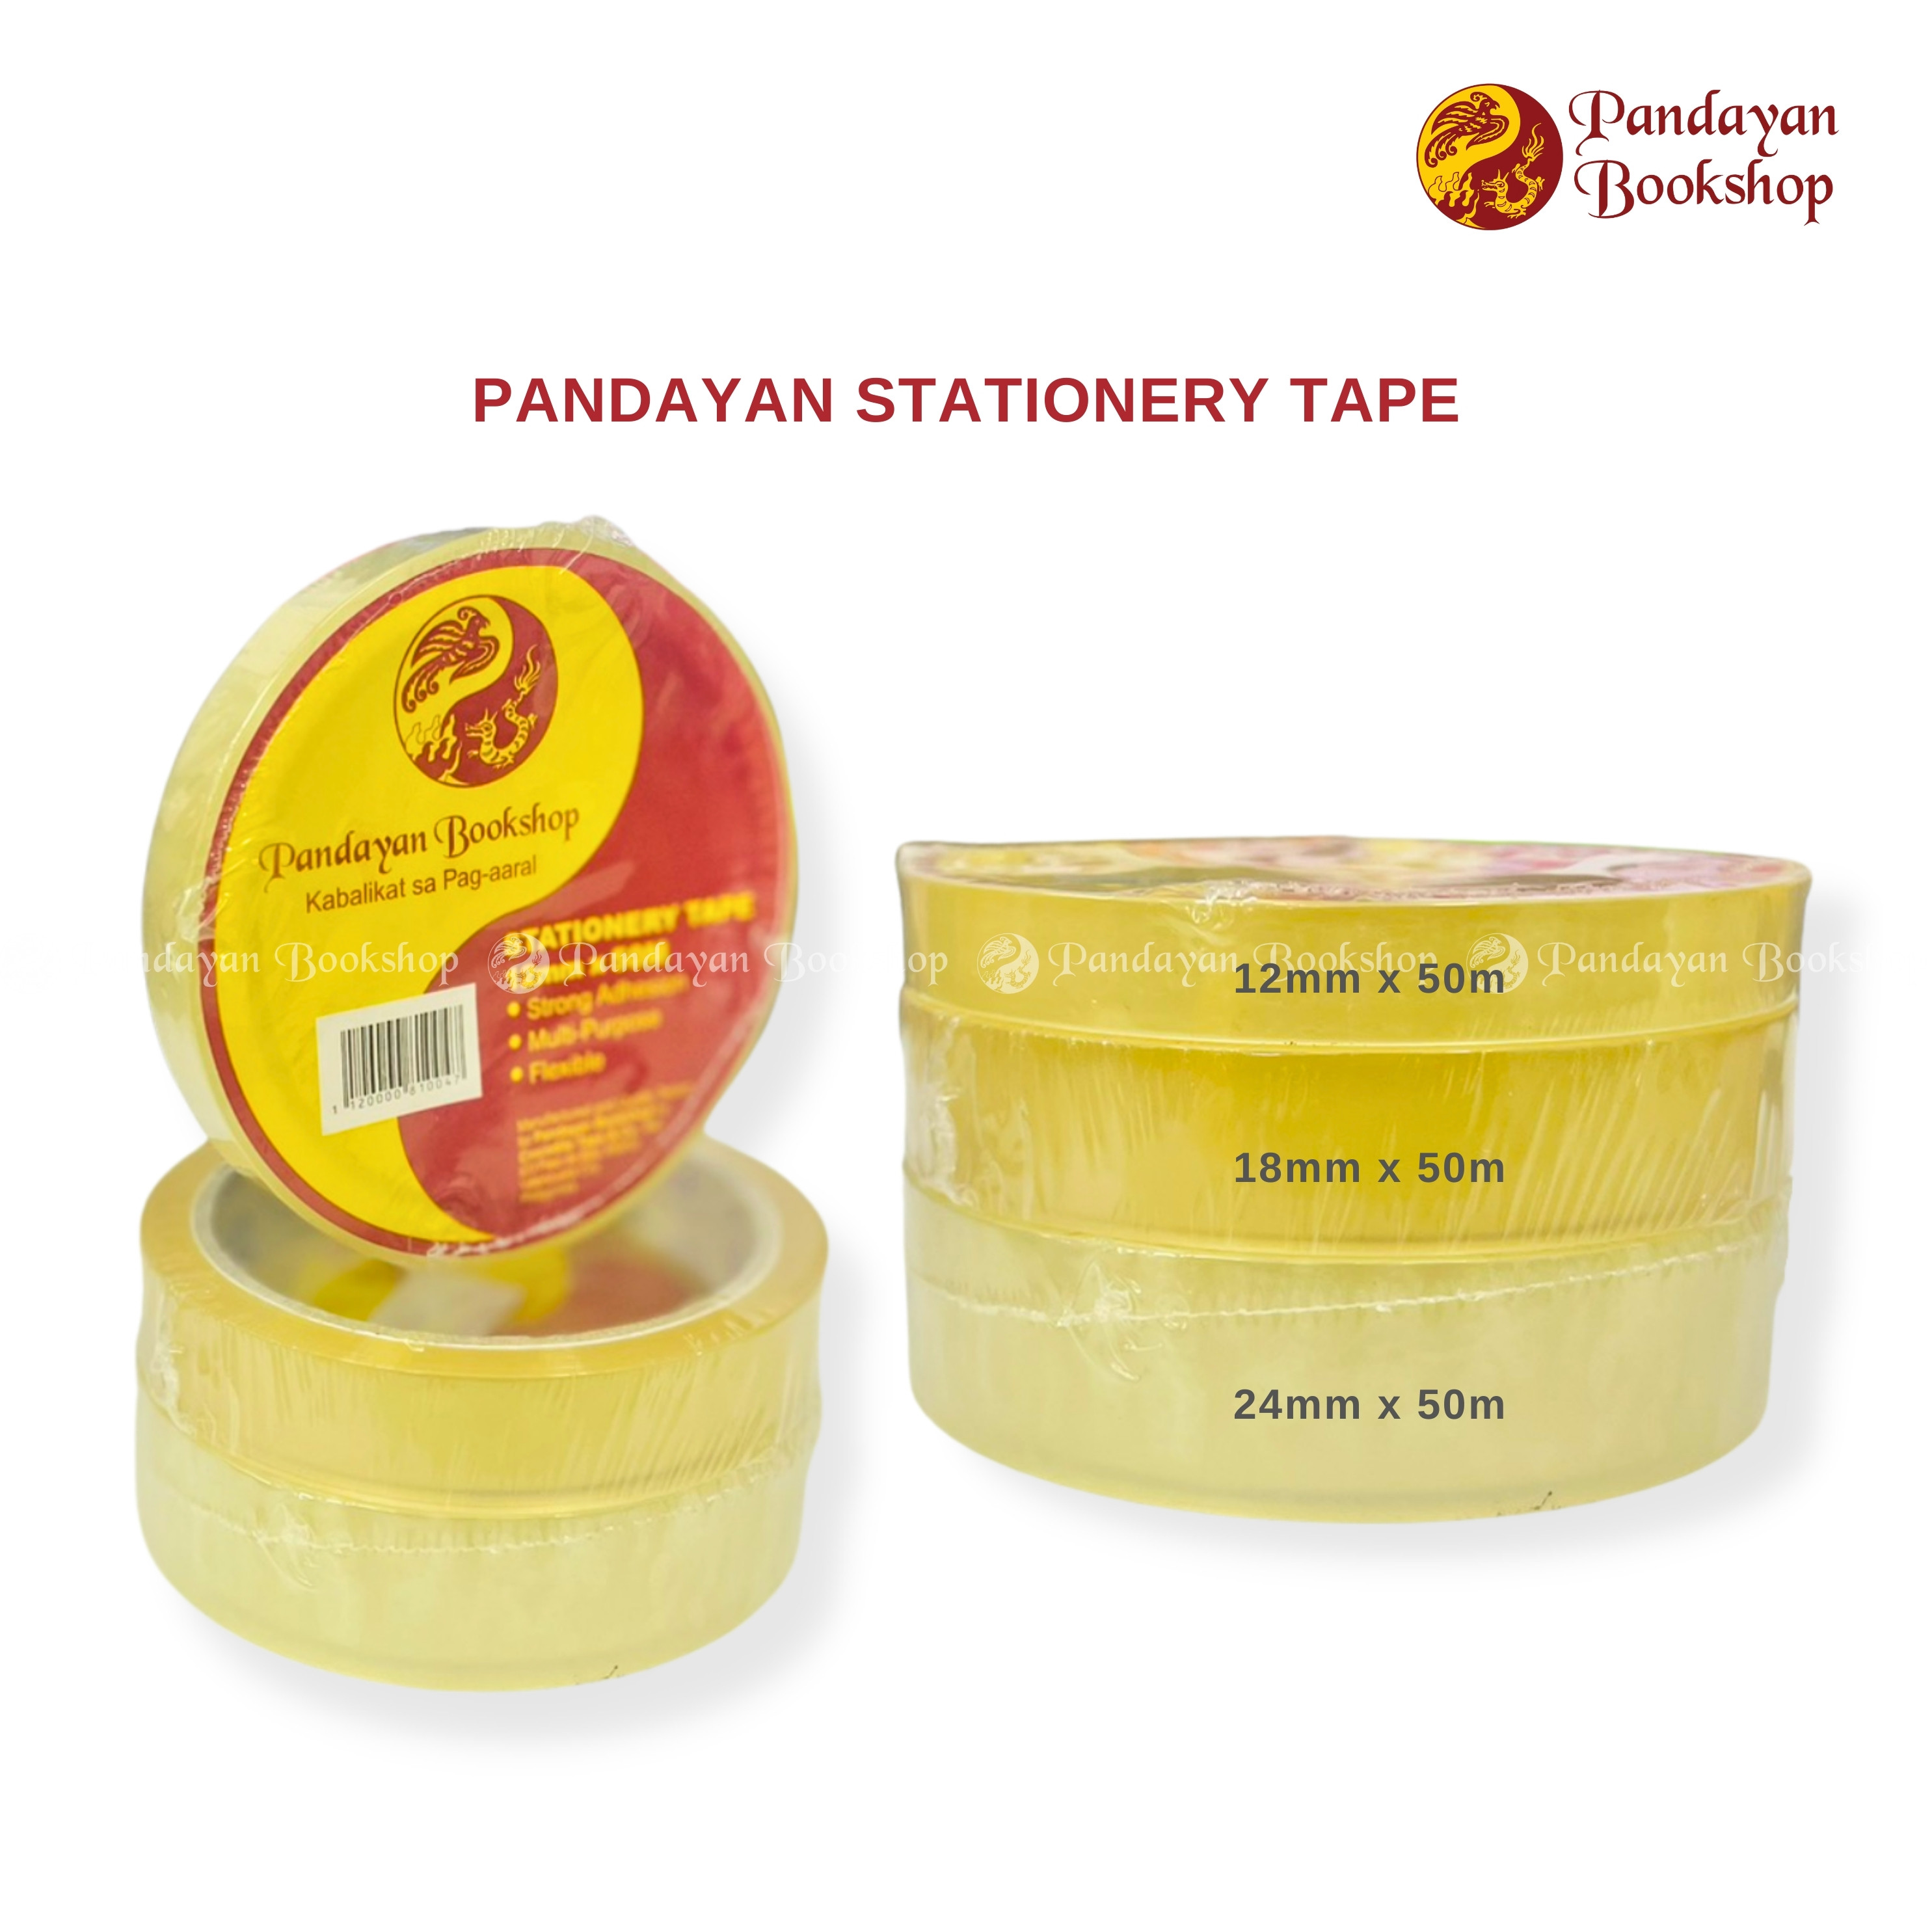 Pandayan Stationery Tape